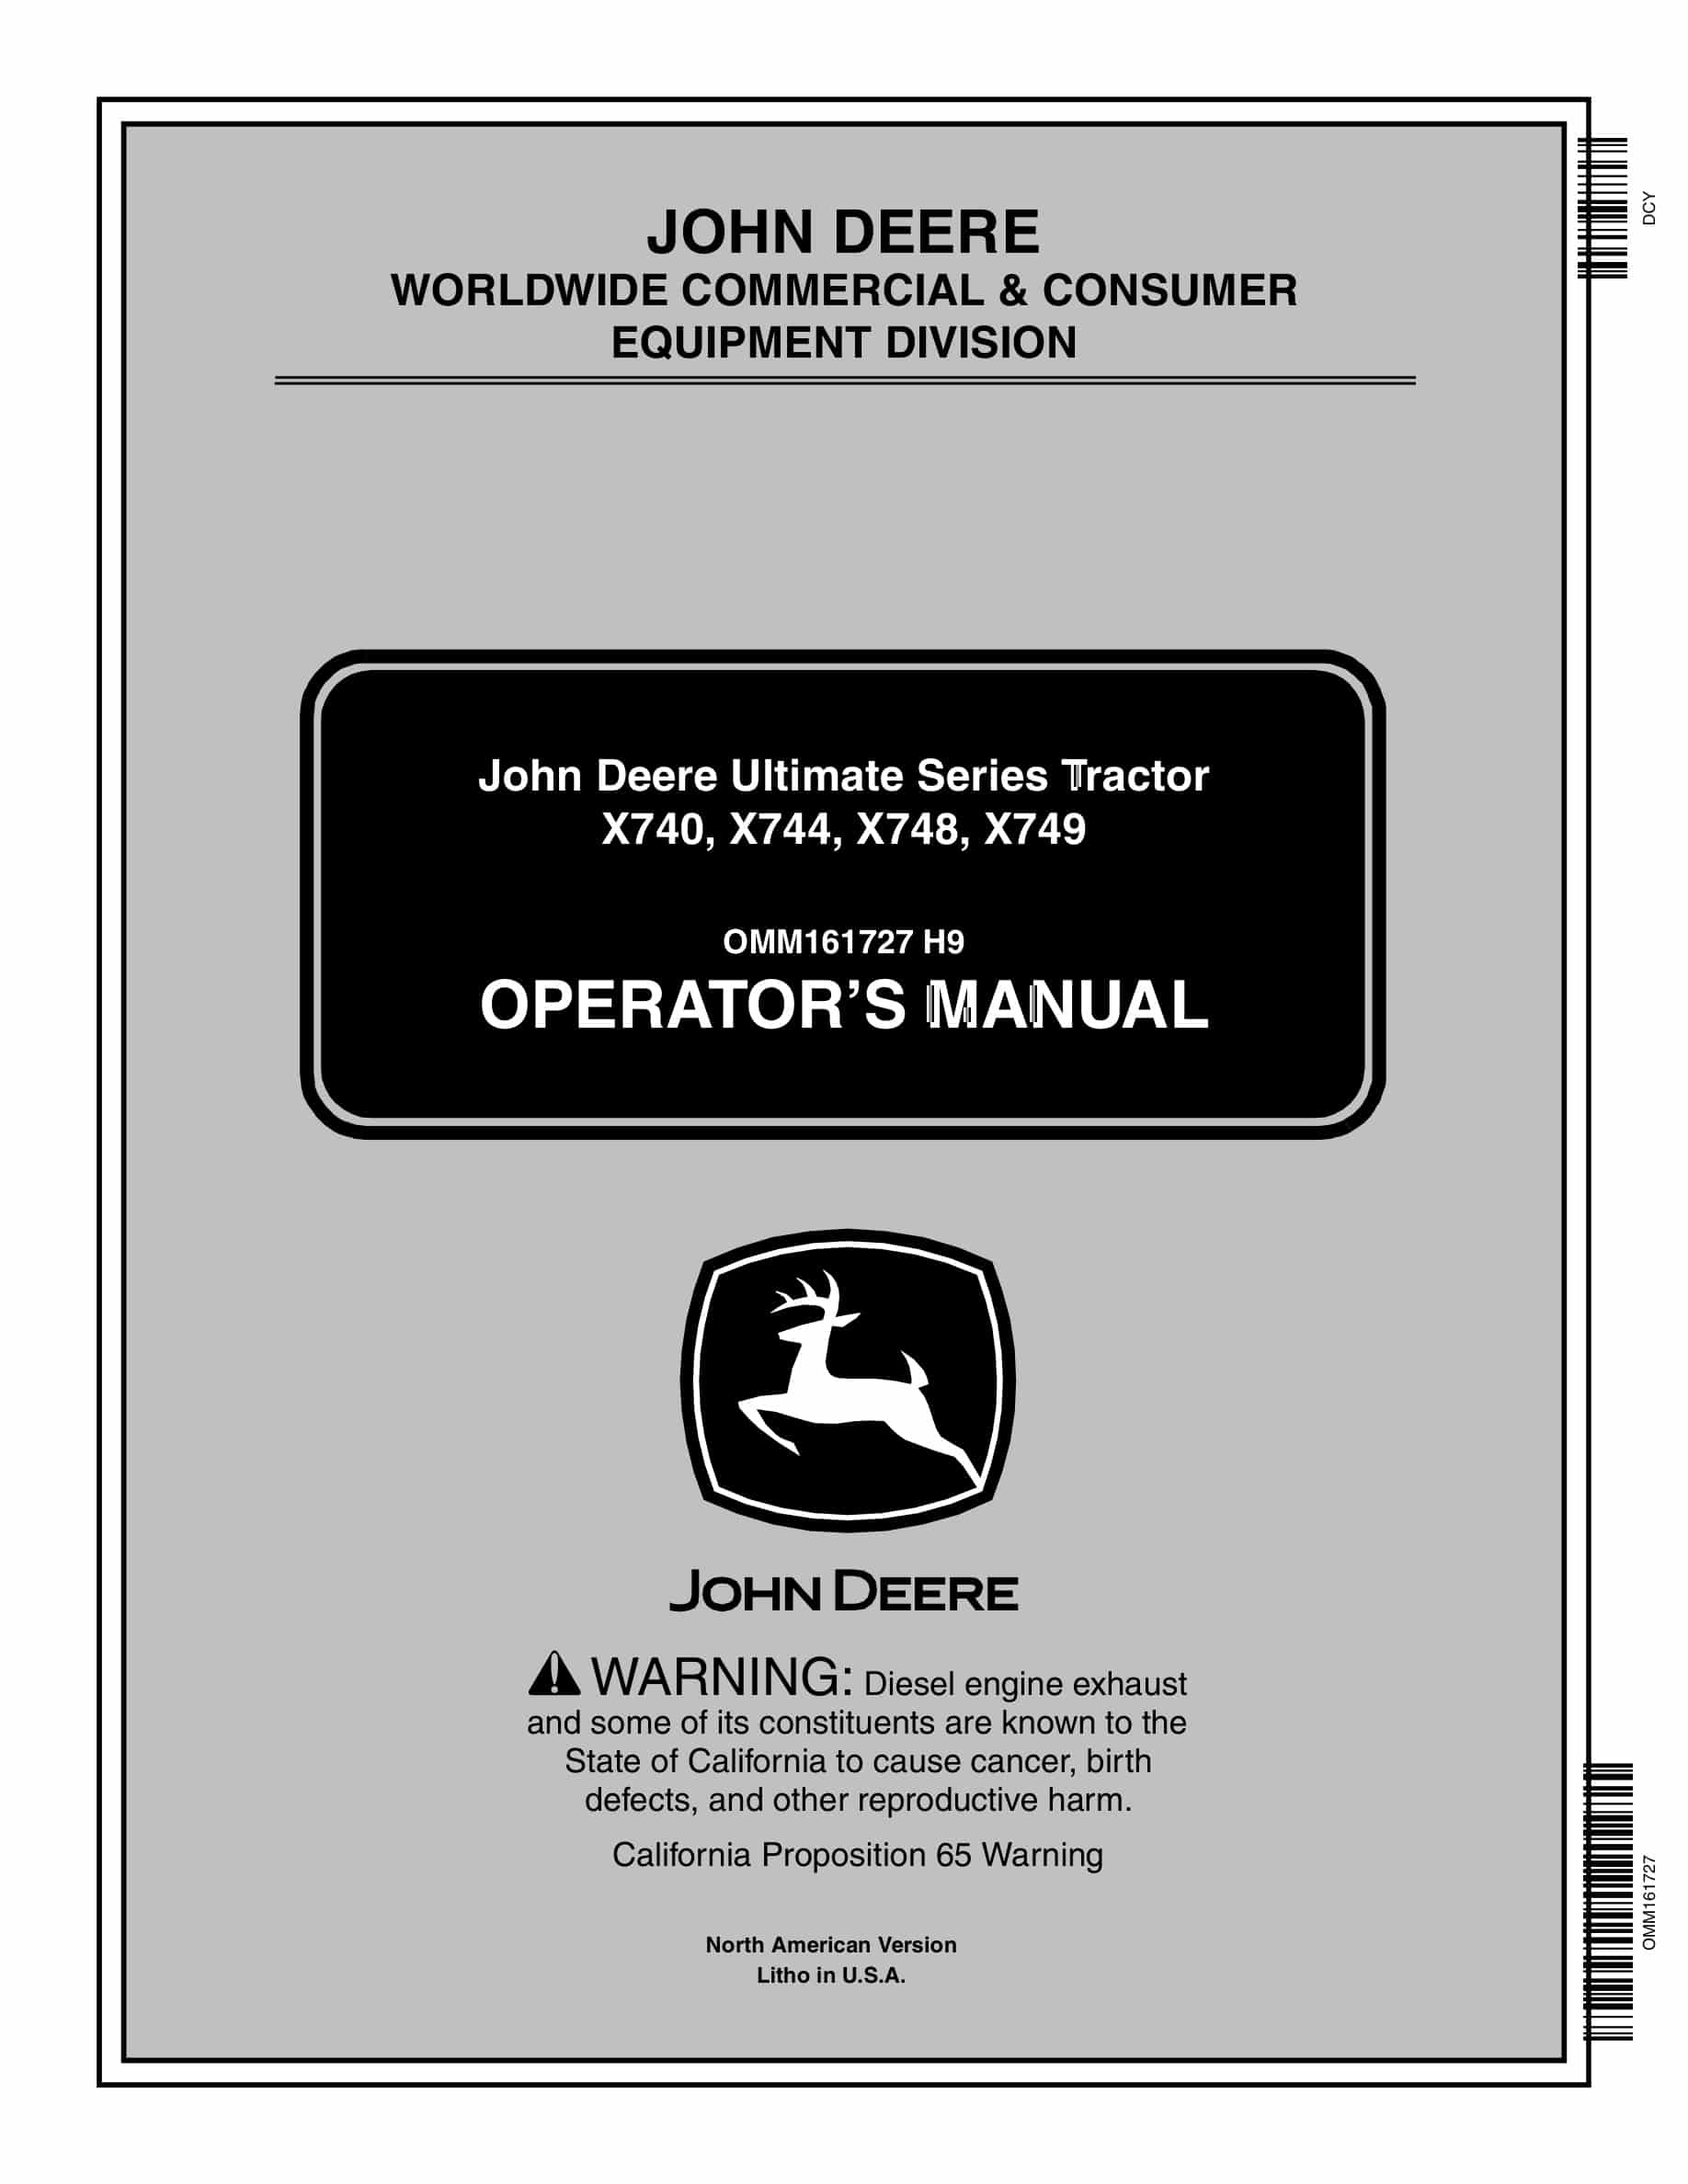 John Deere X740, X744, X748, X749 Tractor Operator Manual OMM161727-1